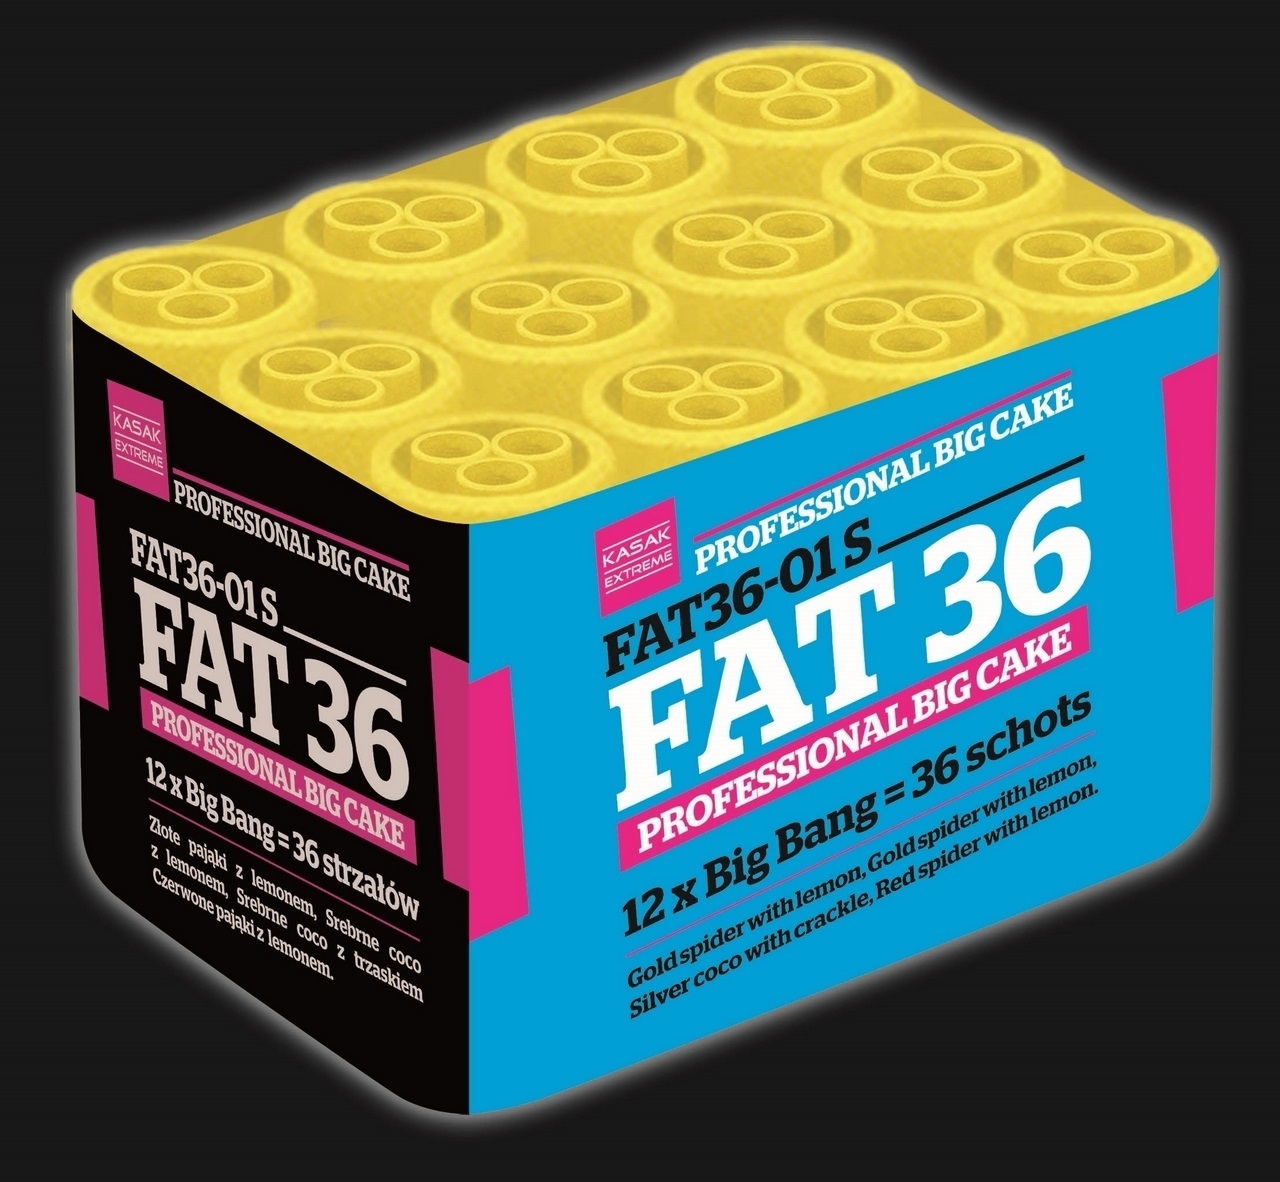 FAT36-01S